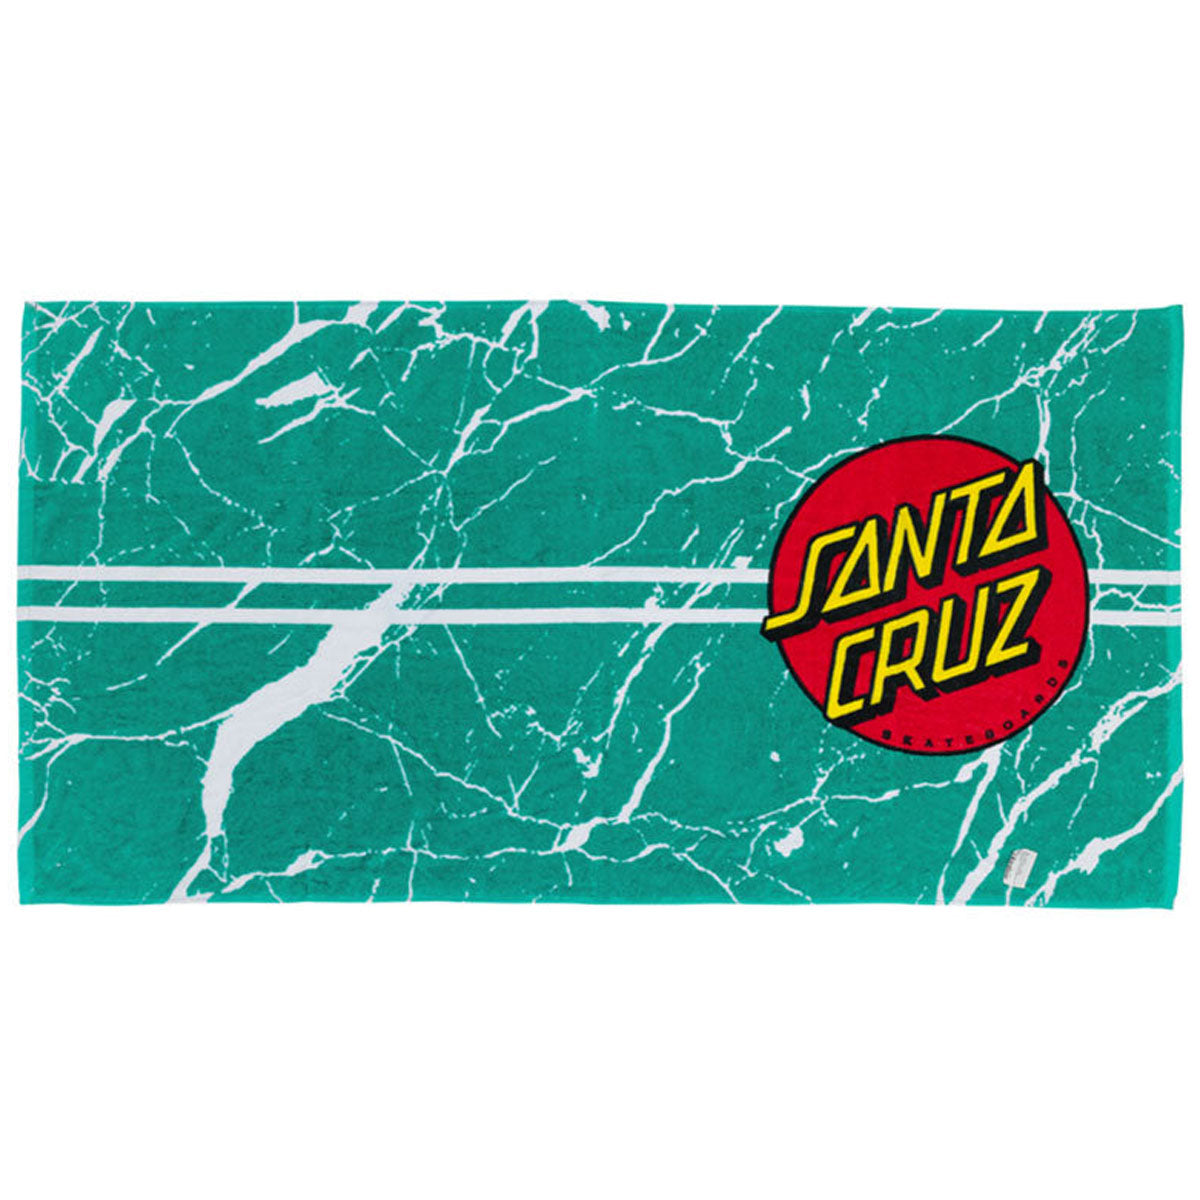 Santa Cruz Classic Dot Towel - Teal Marble image 1